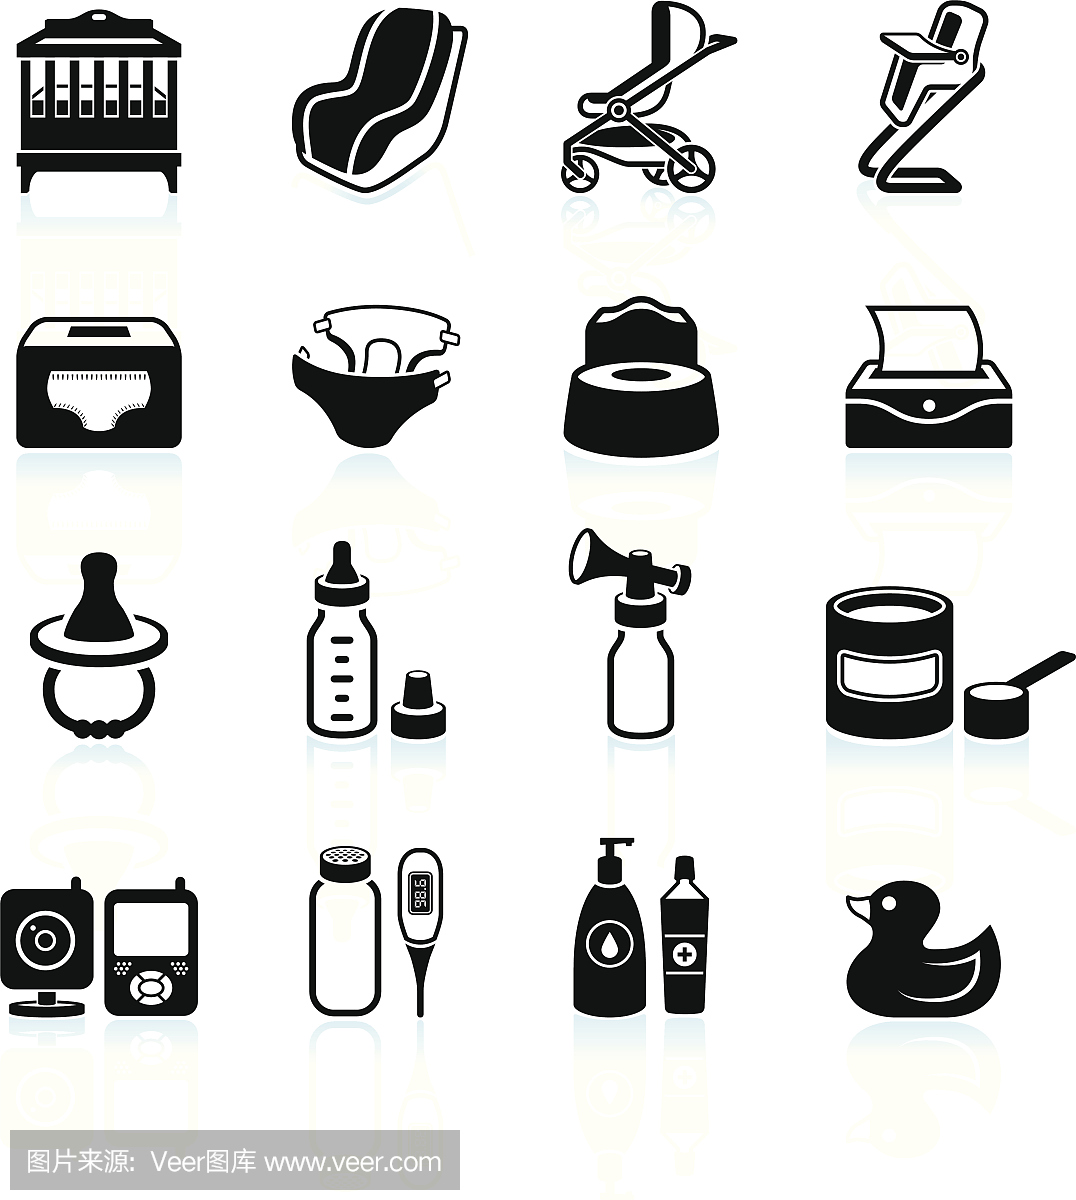 婴儿用品,食品和电器黑白图标集